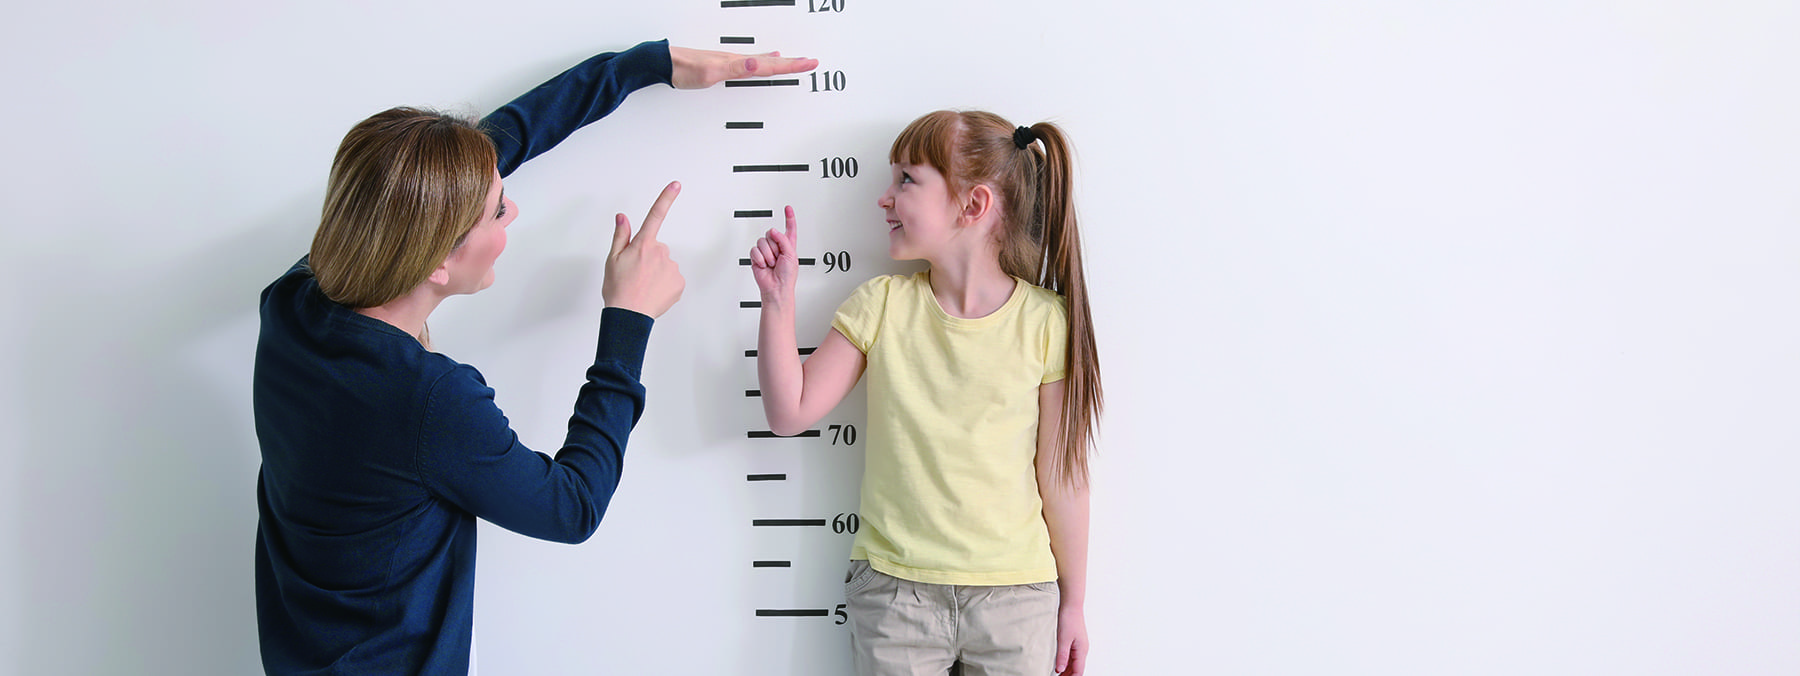 儿童身高的影响因素